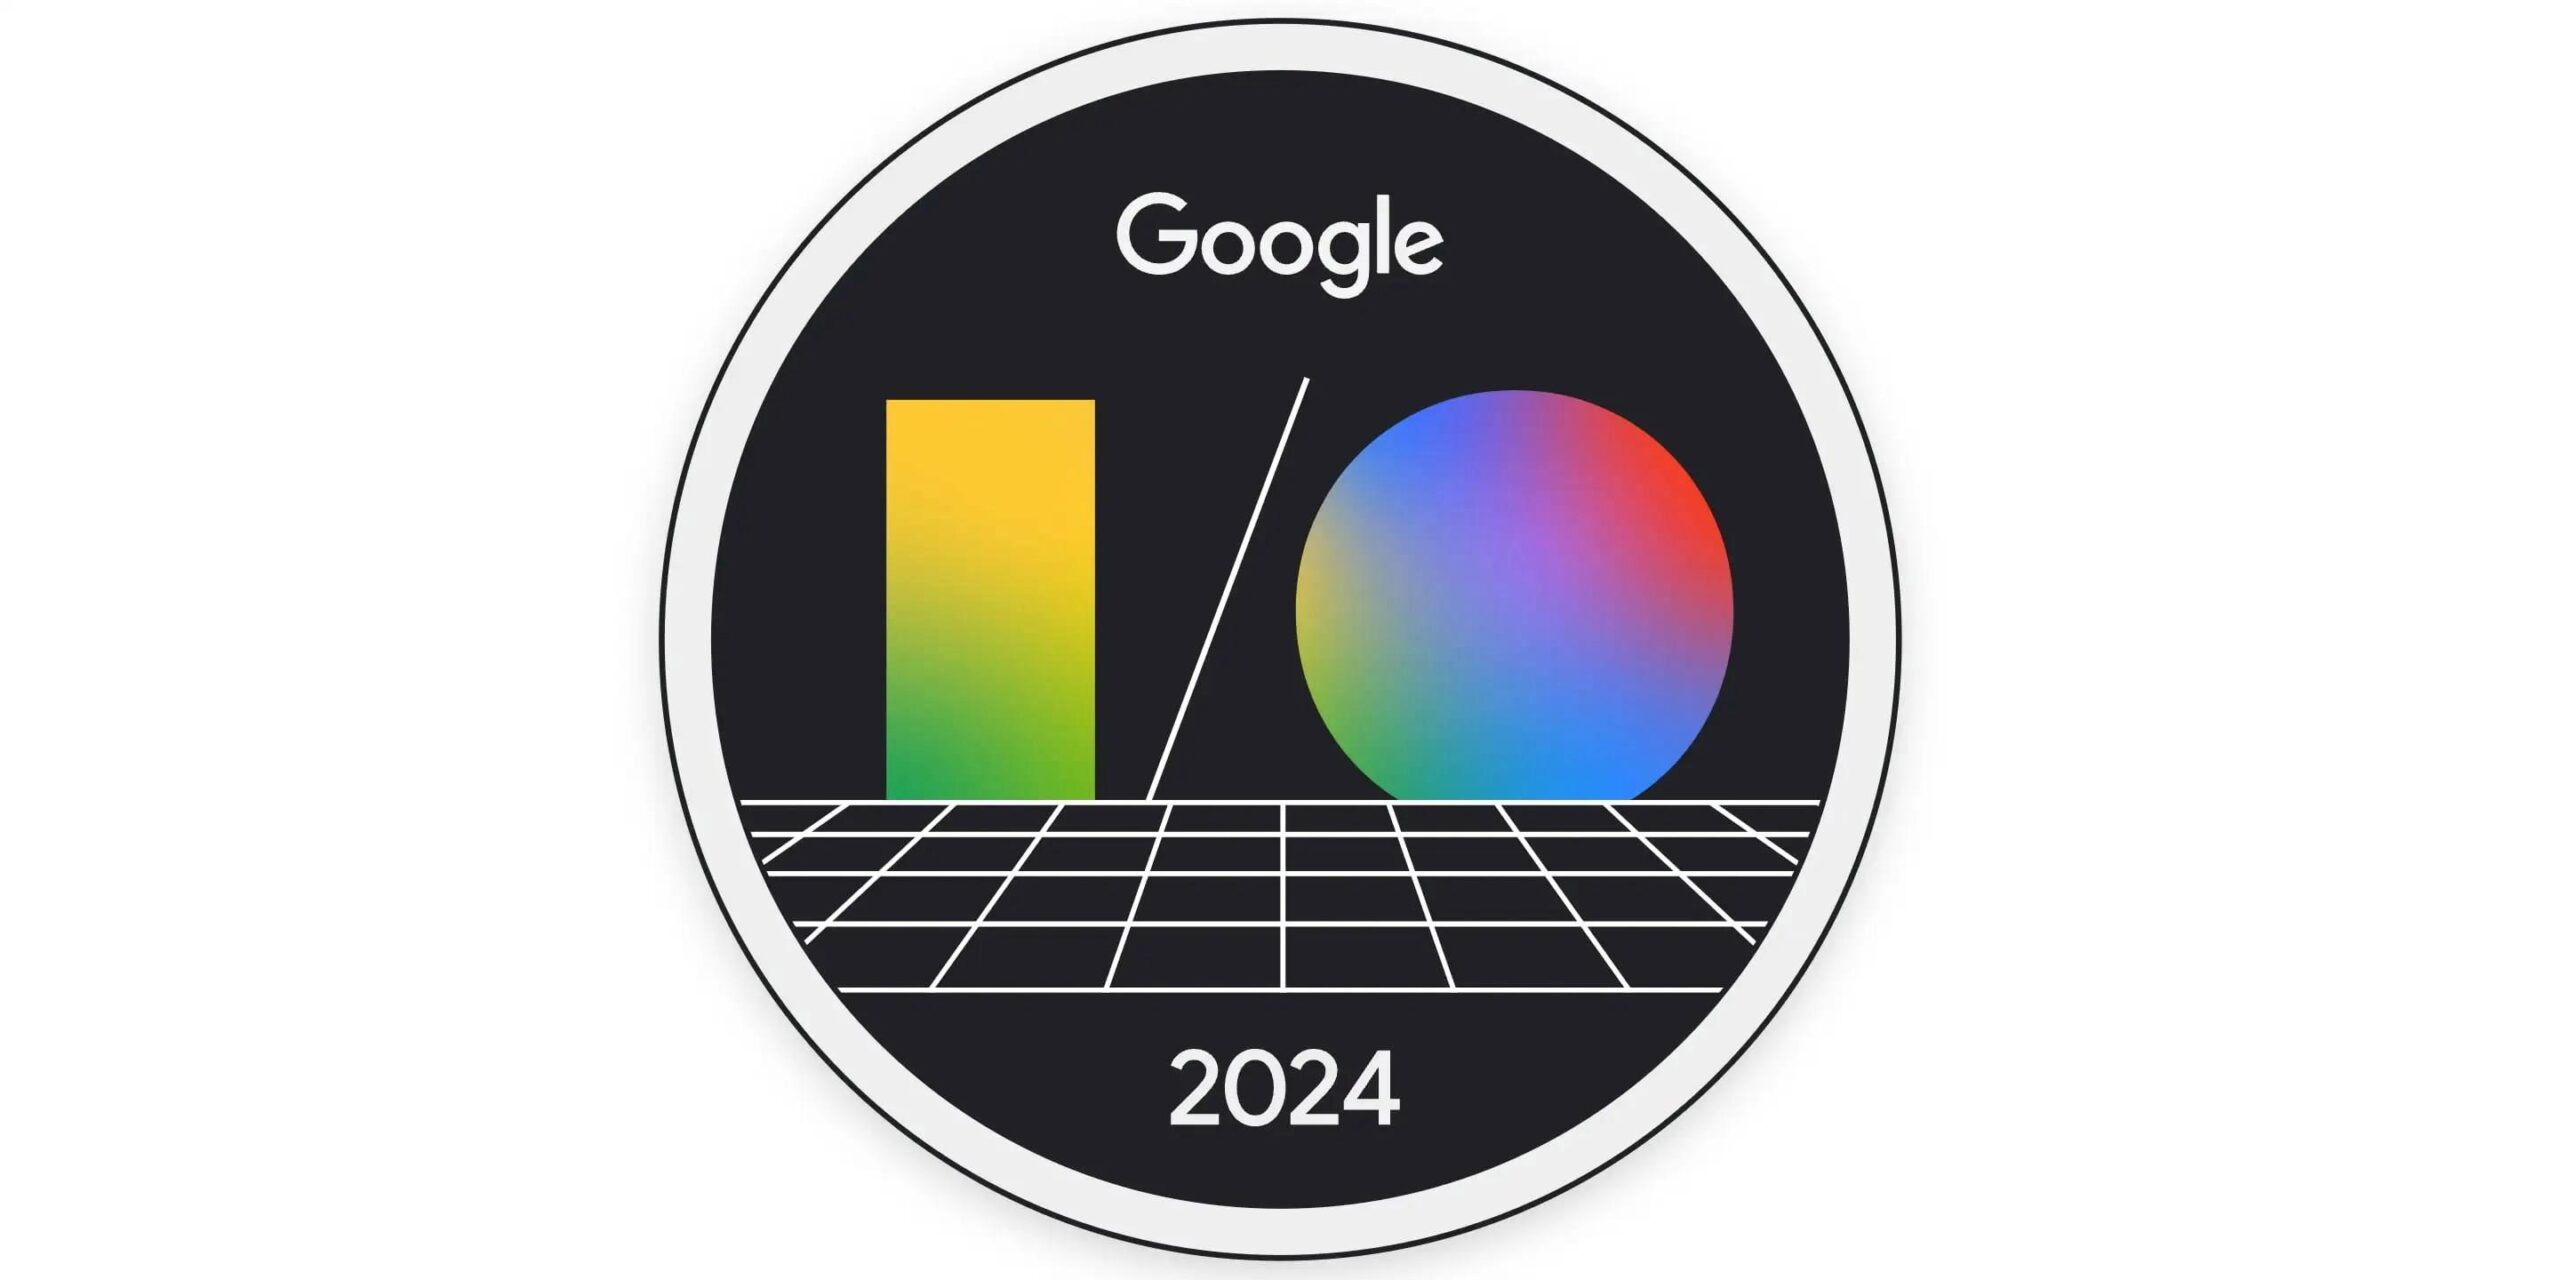 google-io-2024-etkinliginin-tarihi-duyuruldu-neler-bekleniyor-Q9jhwVqv.jpg